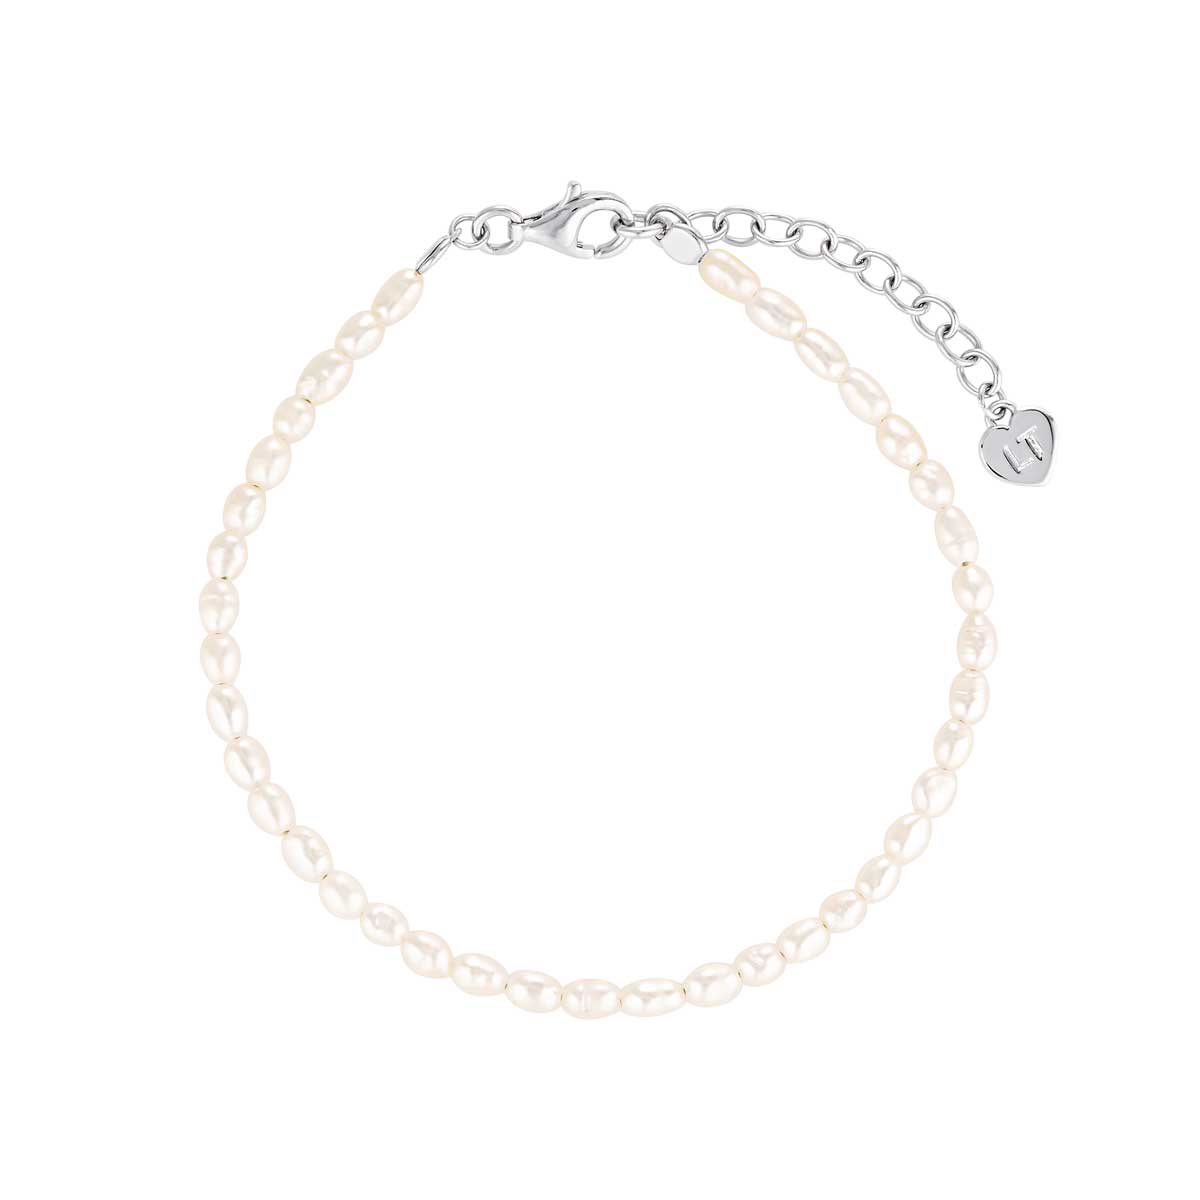 Linda Tahija Coastal Pearl Bracelet - Sterling Silver